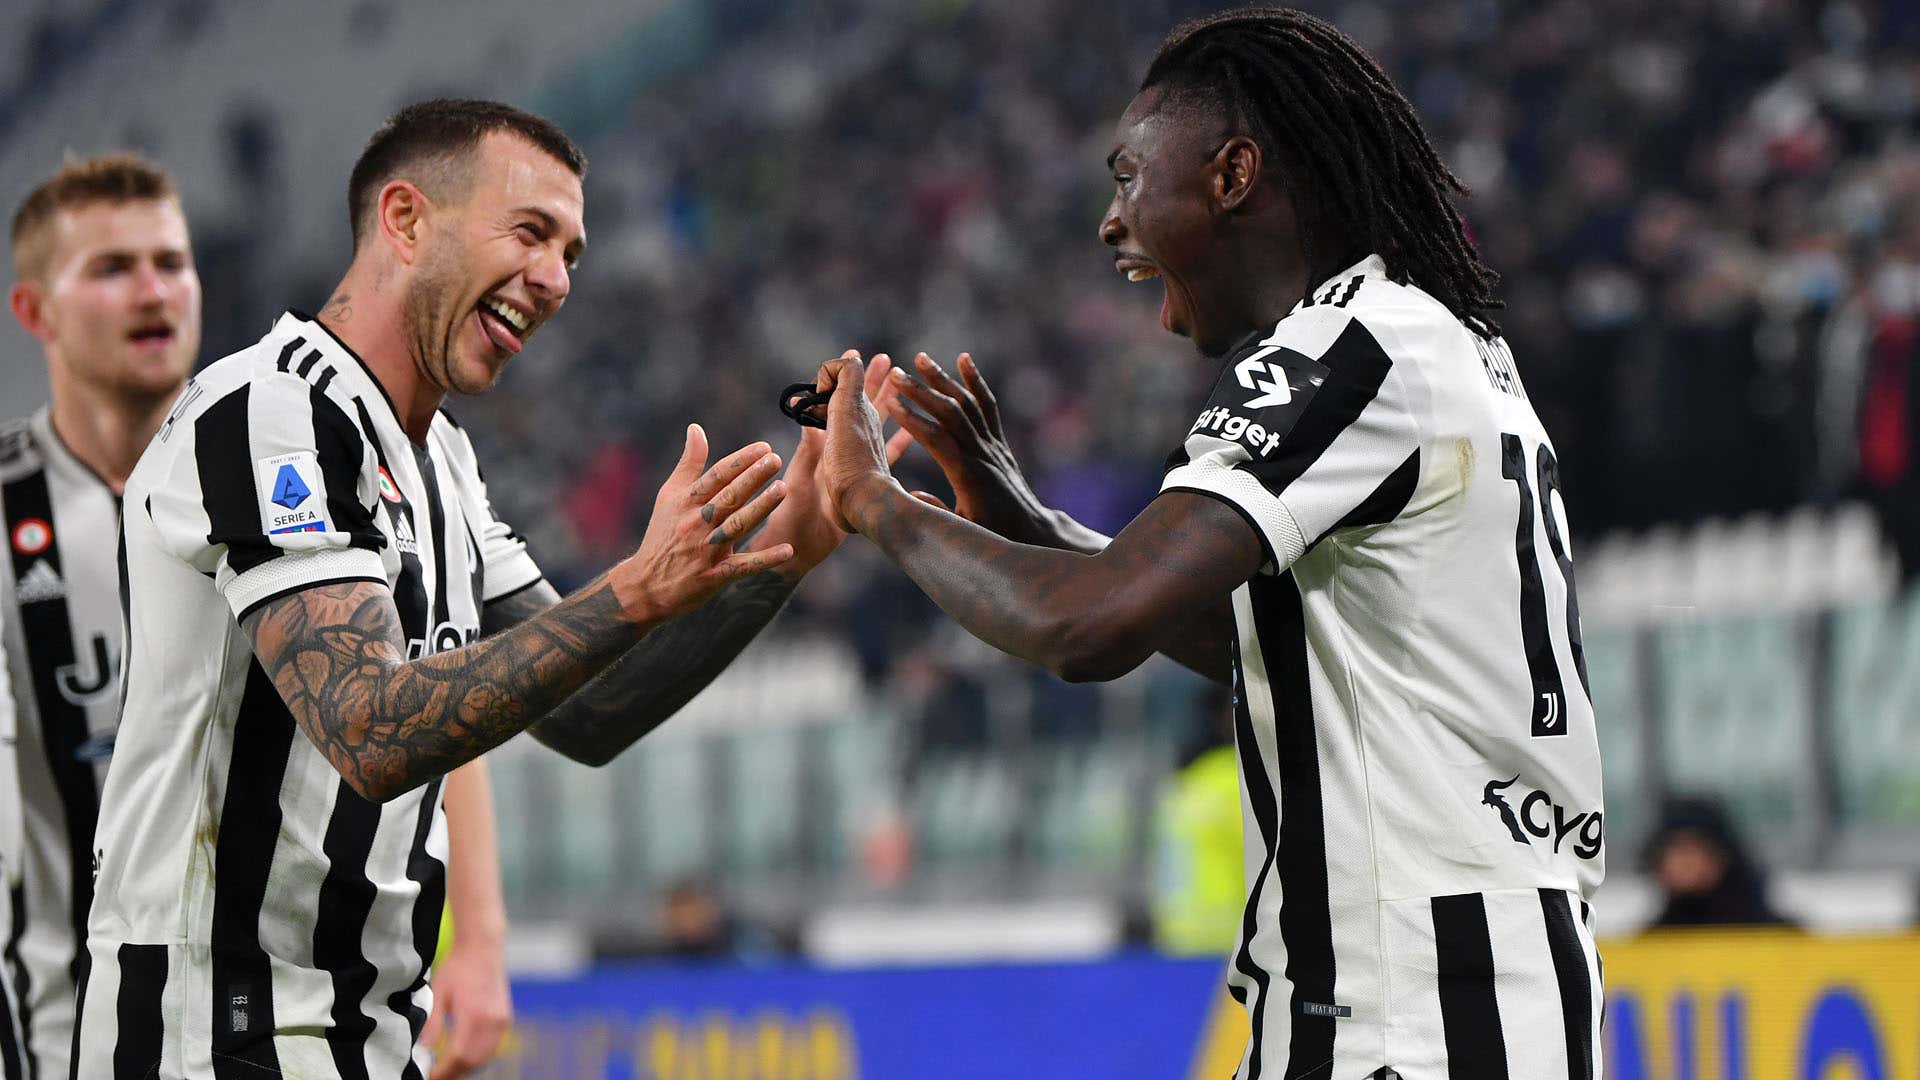 Moise Kean of Juventus celebrates after scoring